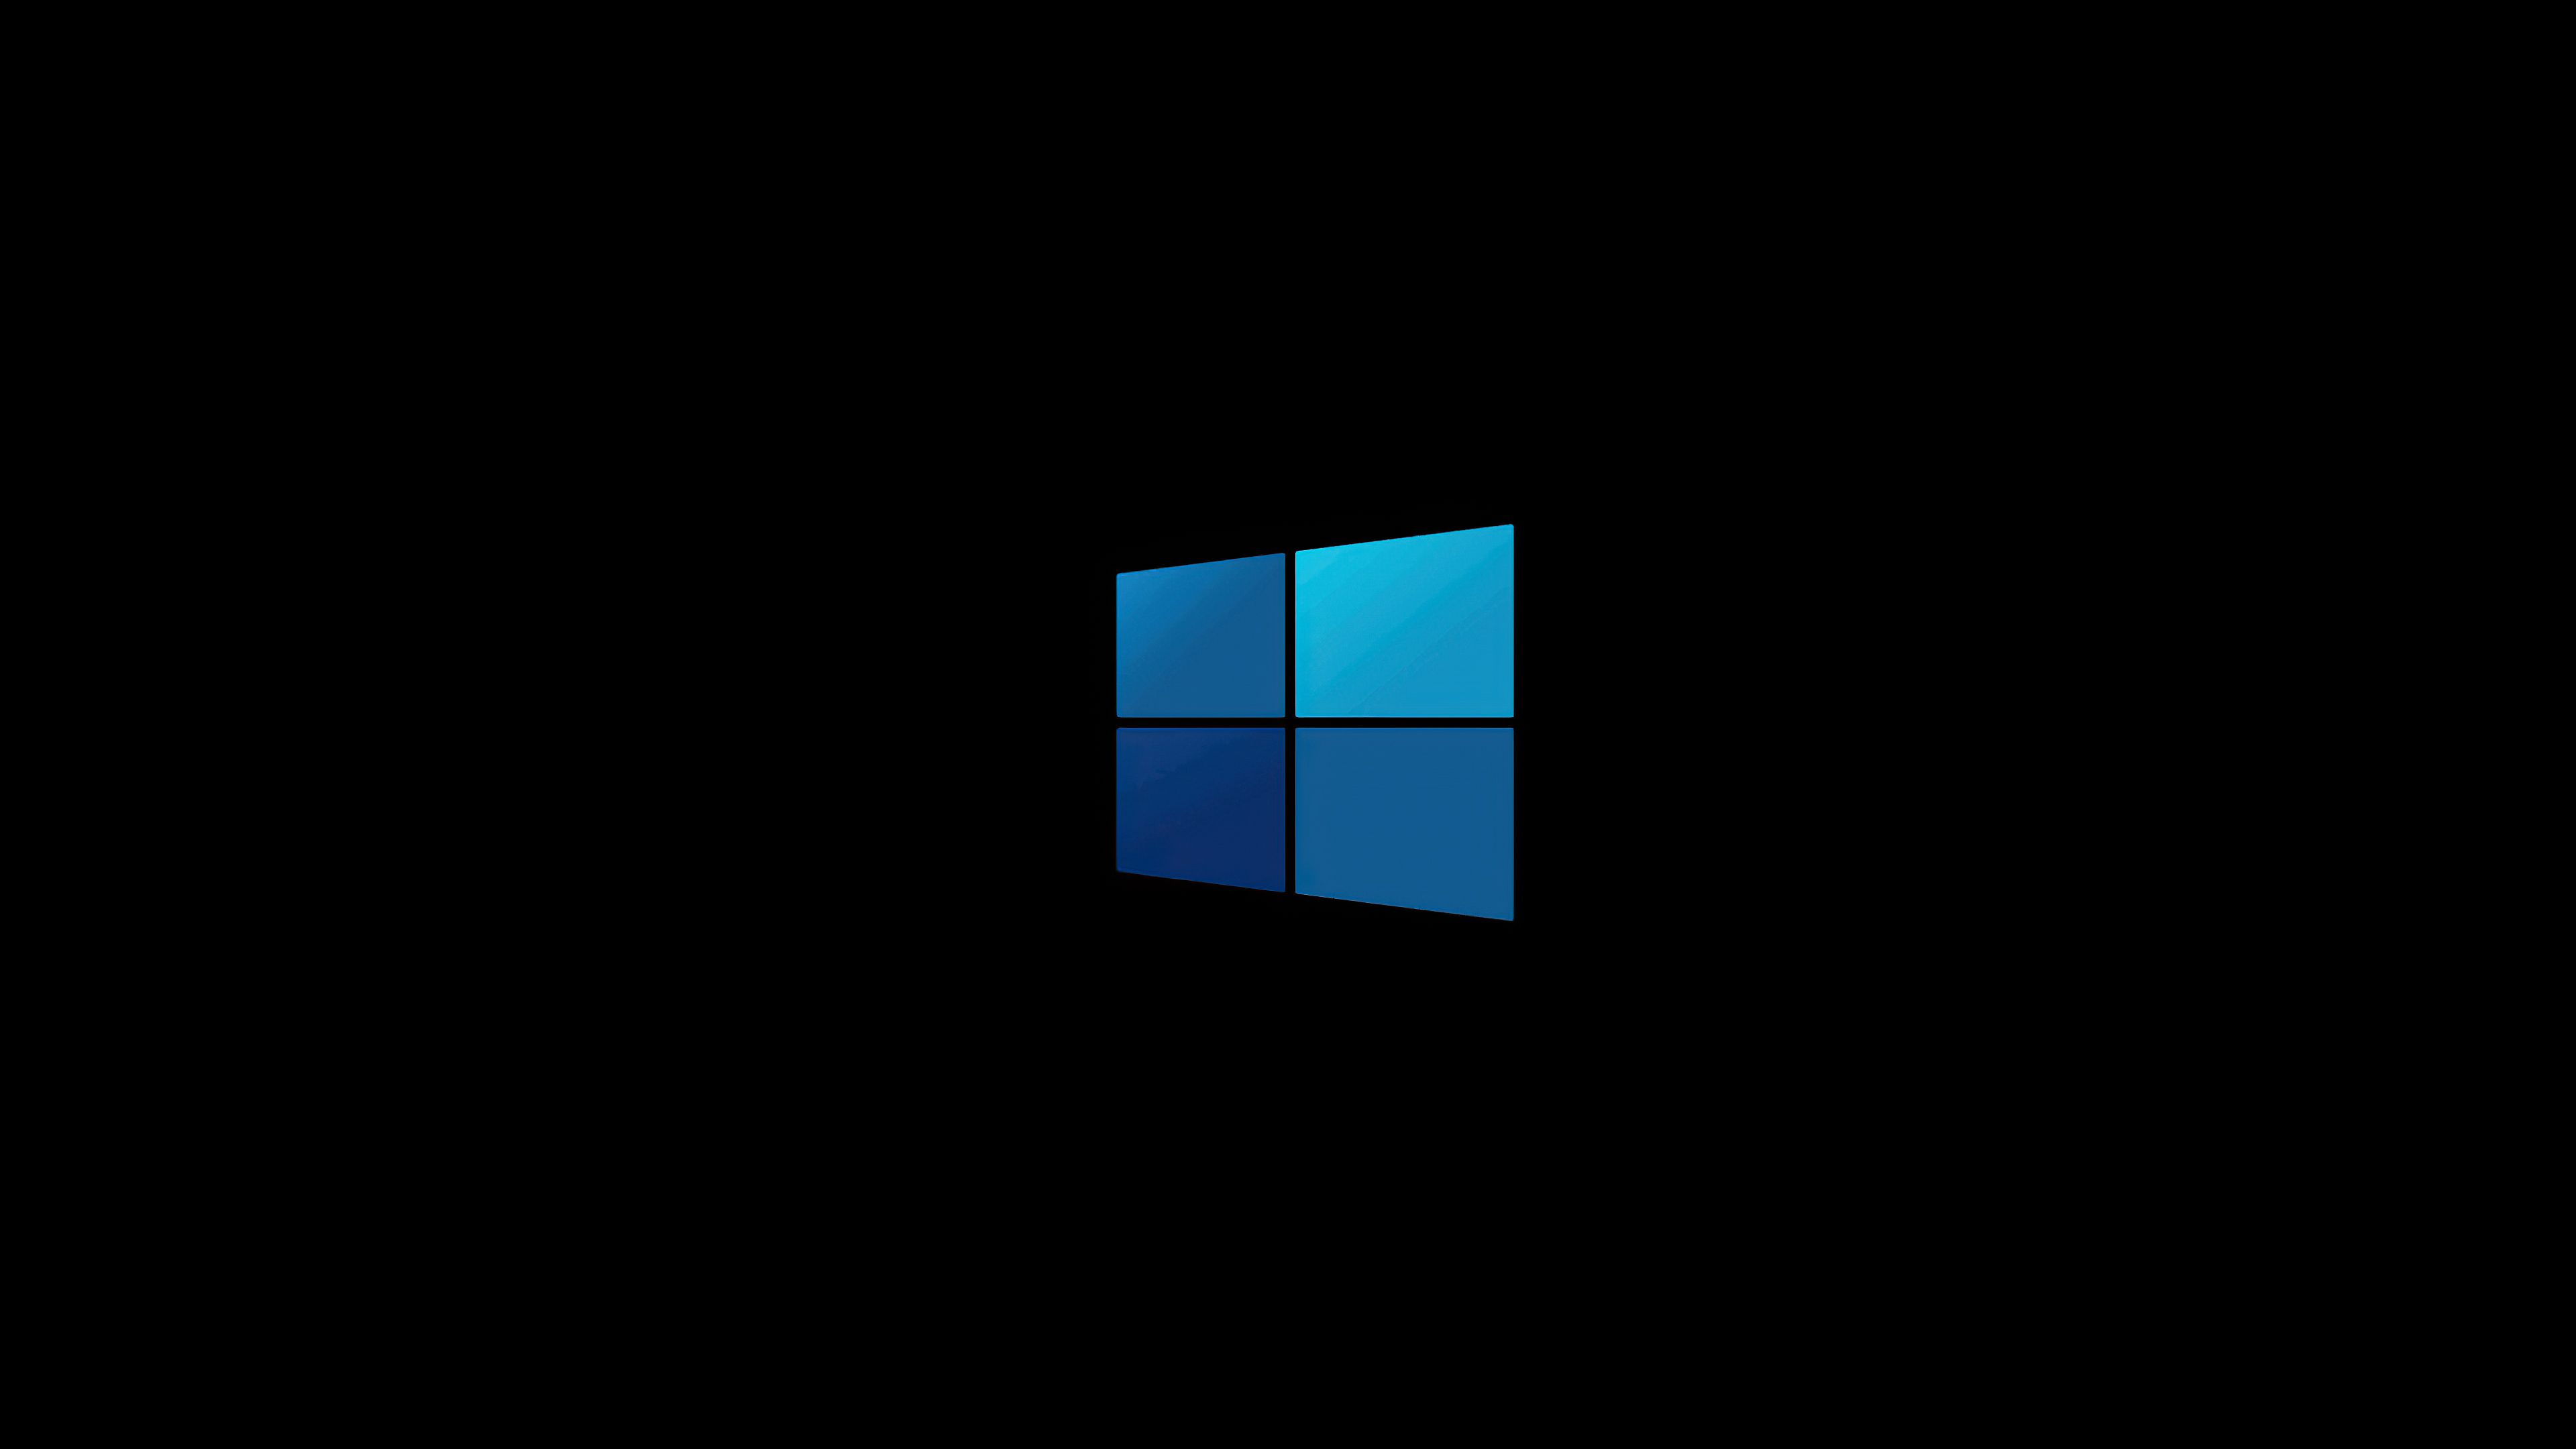 Windows 10 Minimal Logo 4k, HD Computer ...hdqwalls